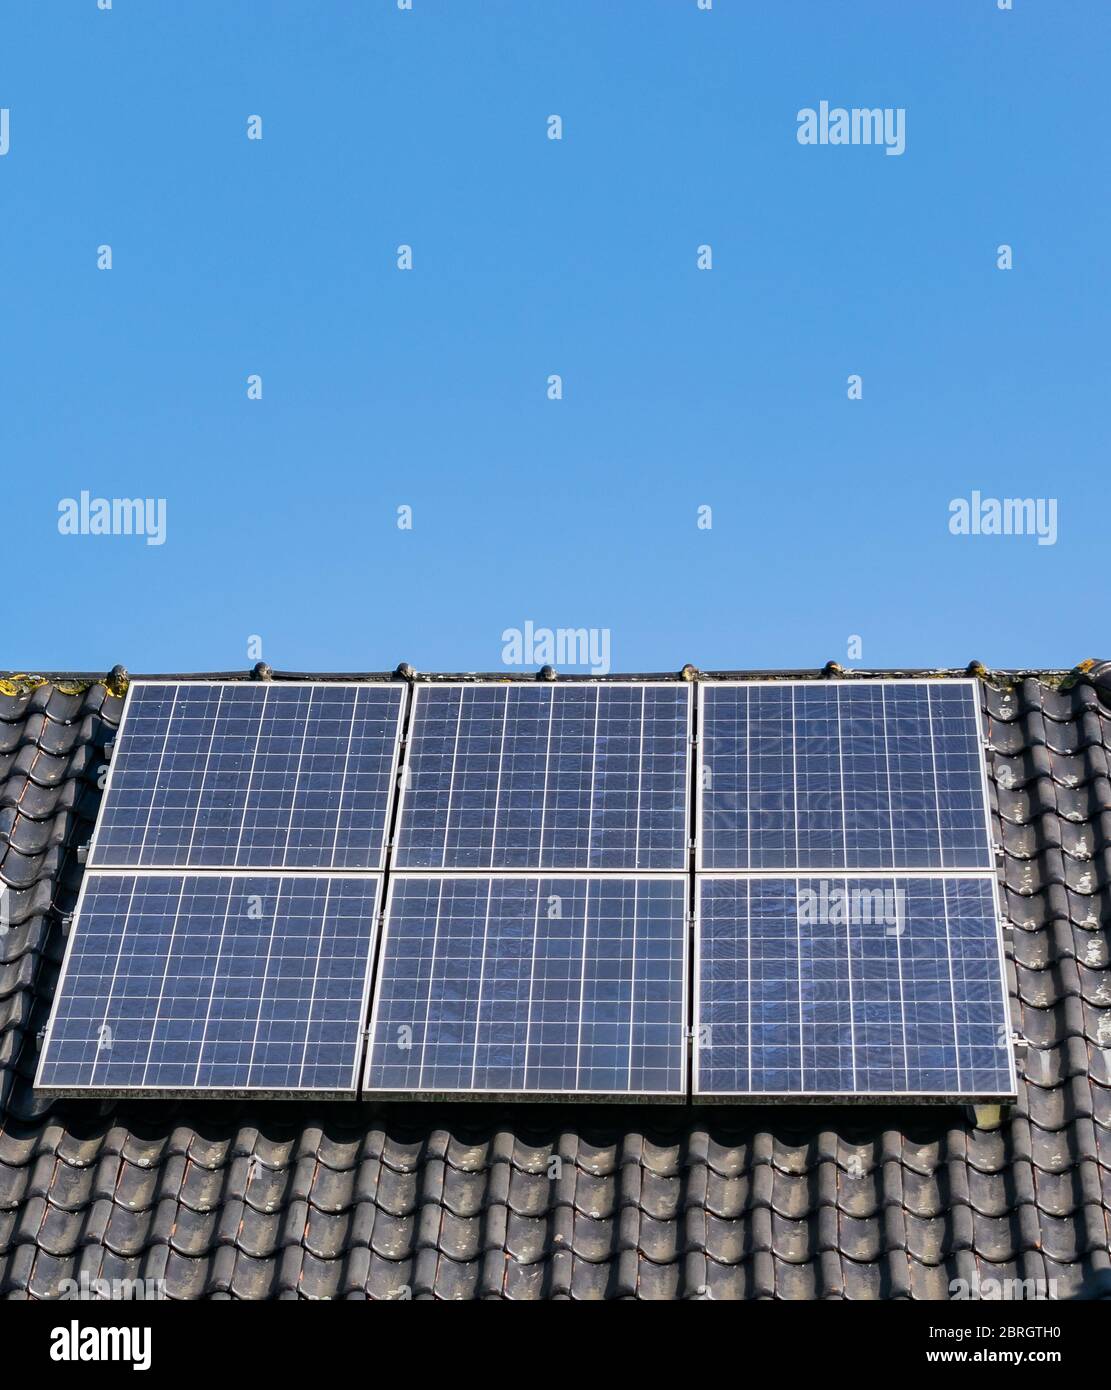 La energía, la tecnología, la electricidad y el concepto ecológico: paneles solares en el techo de la casa como una fuente de energía renovable limpia. Foto de stock